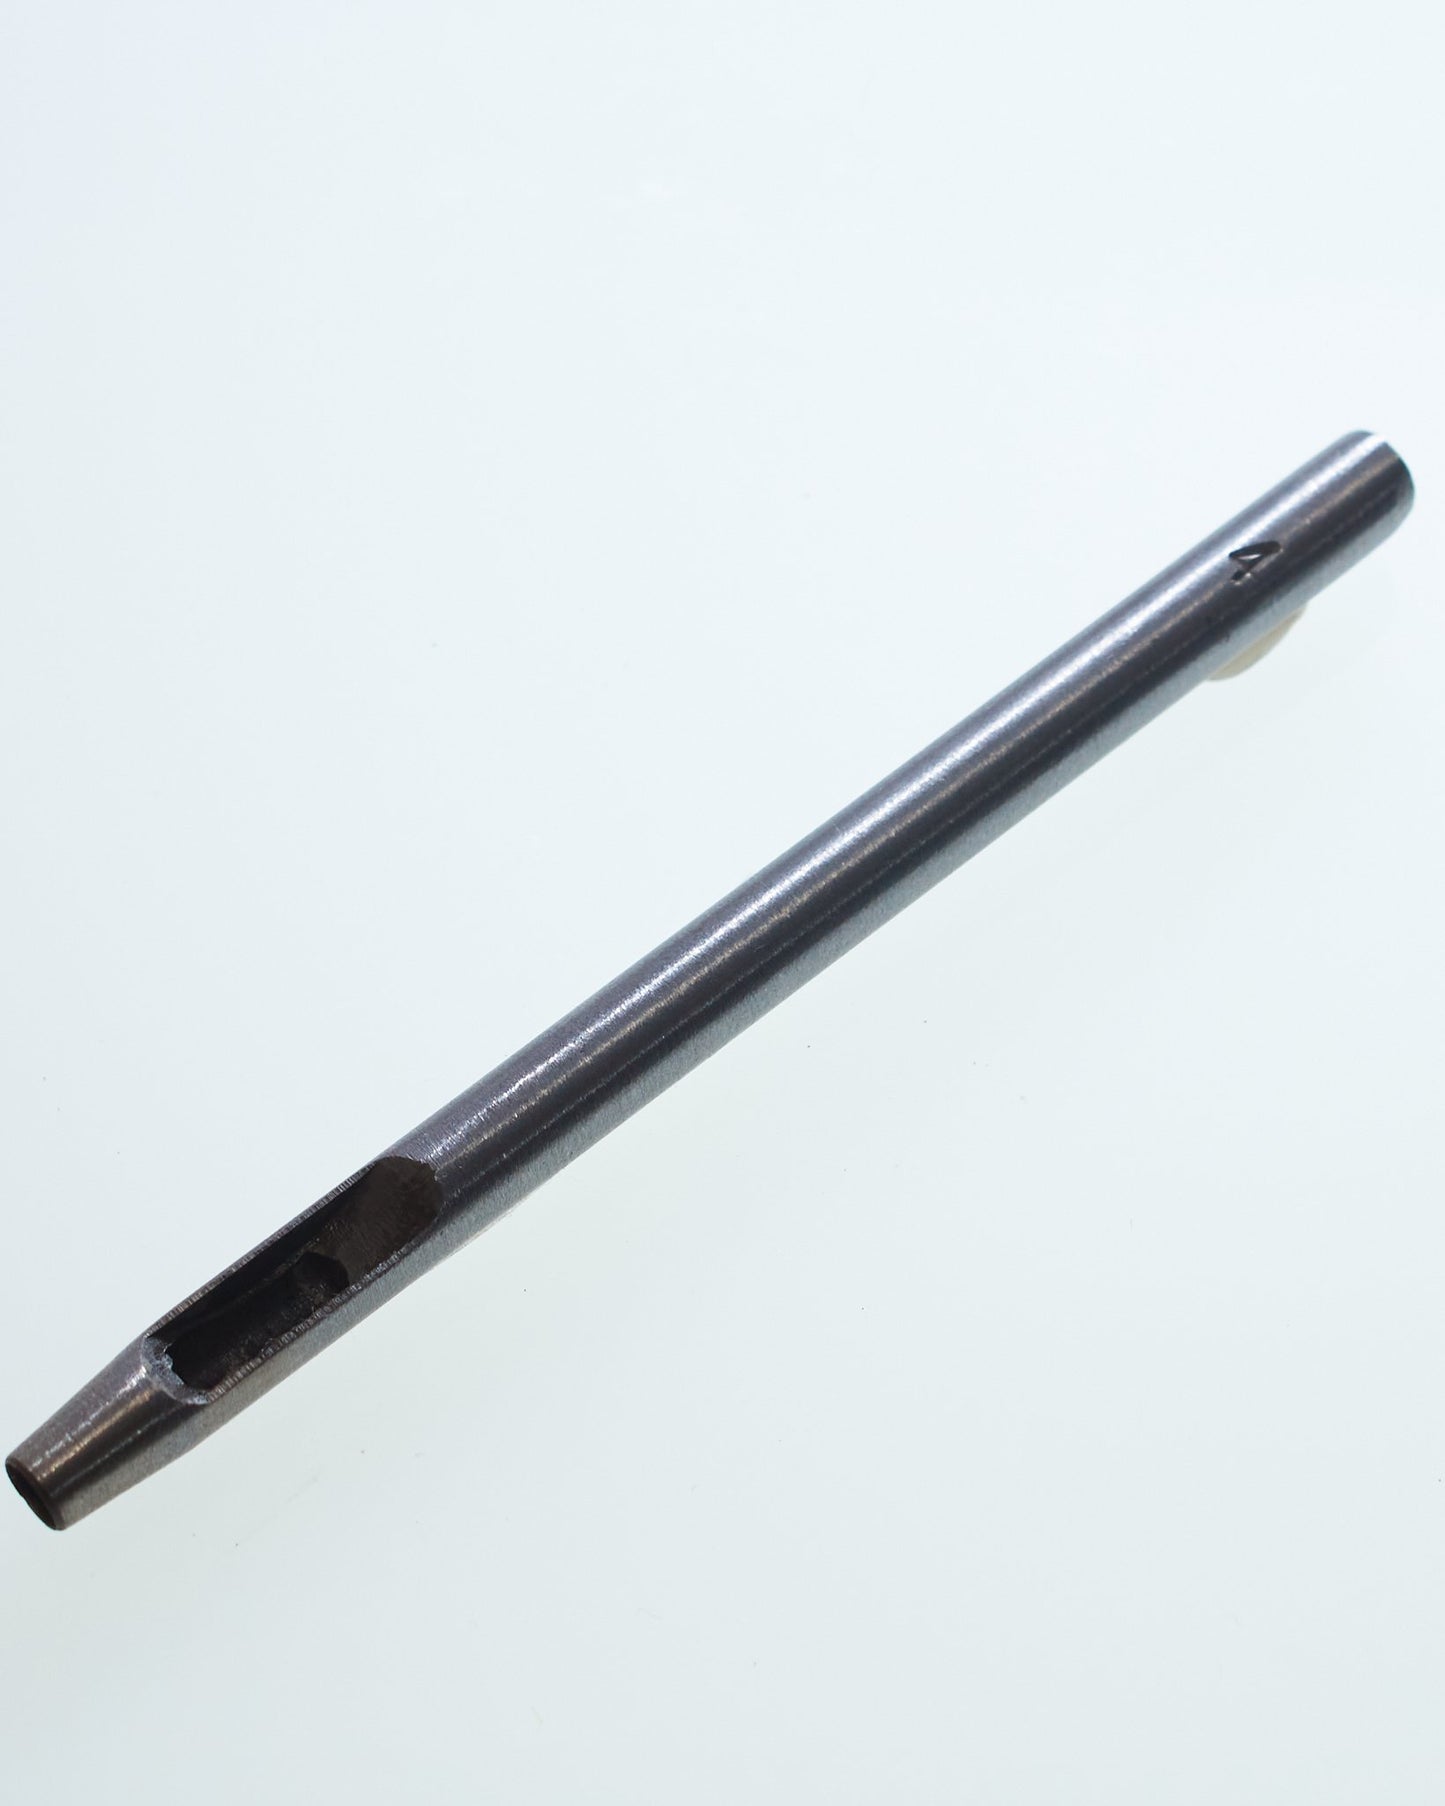 穴あけポンチ 穴径4mm 1本入り 鋼製 JPC0085-10 - ジャパンパーツセンター